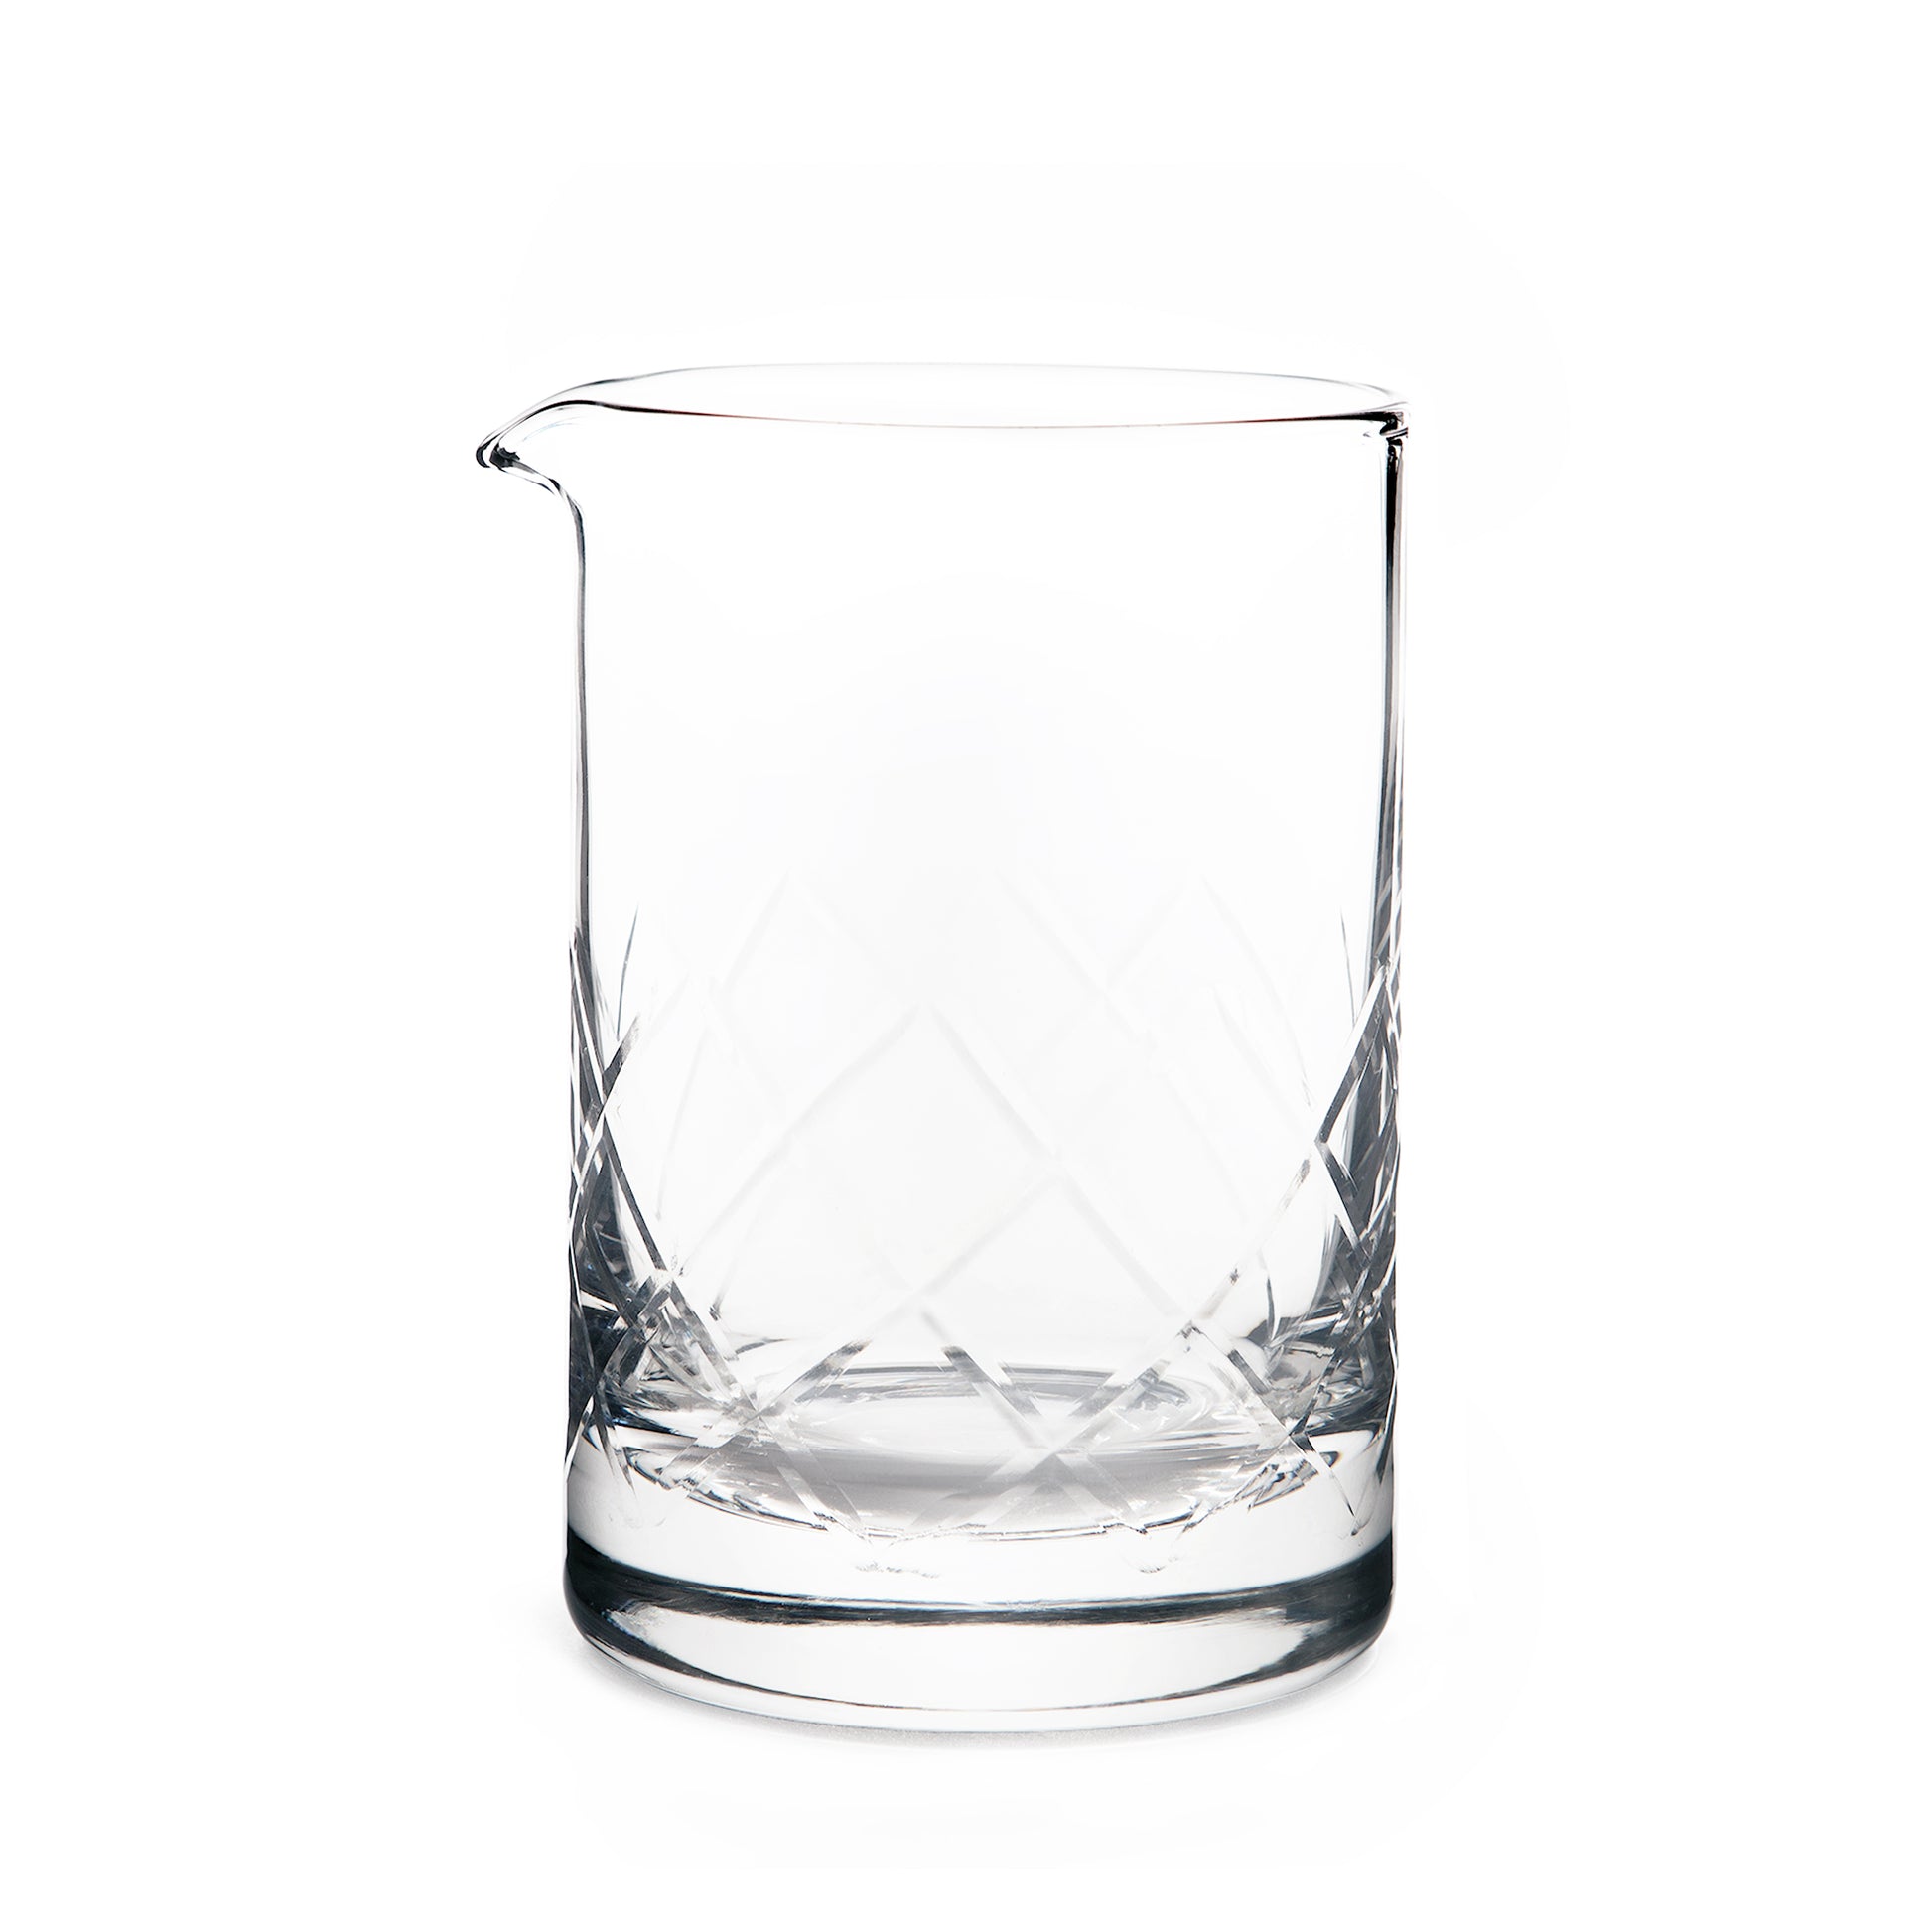 YARAI® MIXING GLASS, SEAMLESS / FLAT BASE – 550ml (19oz)